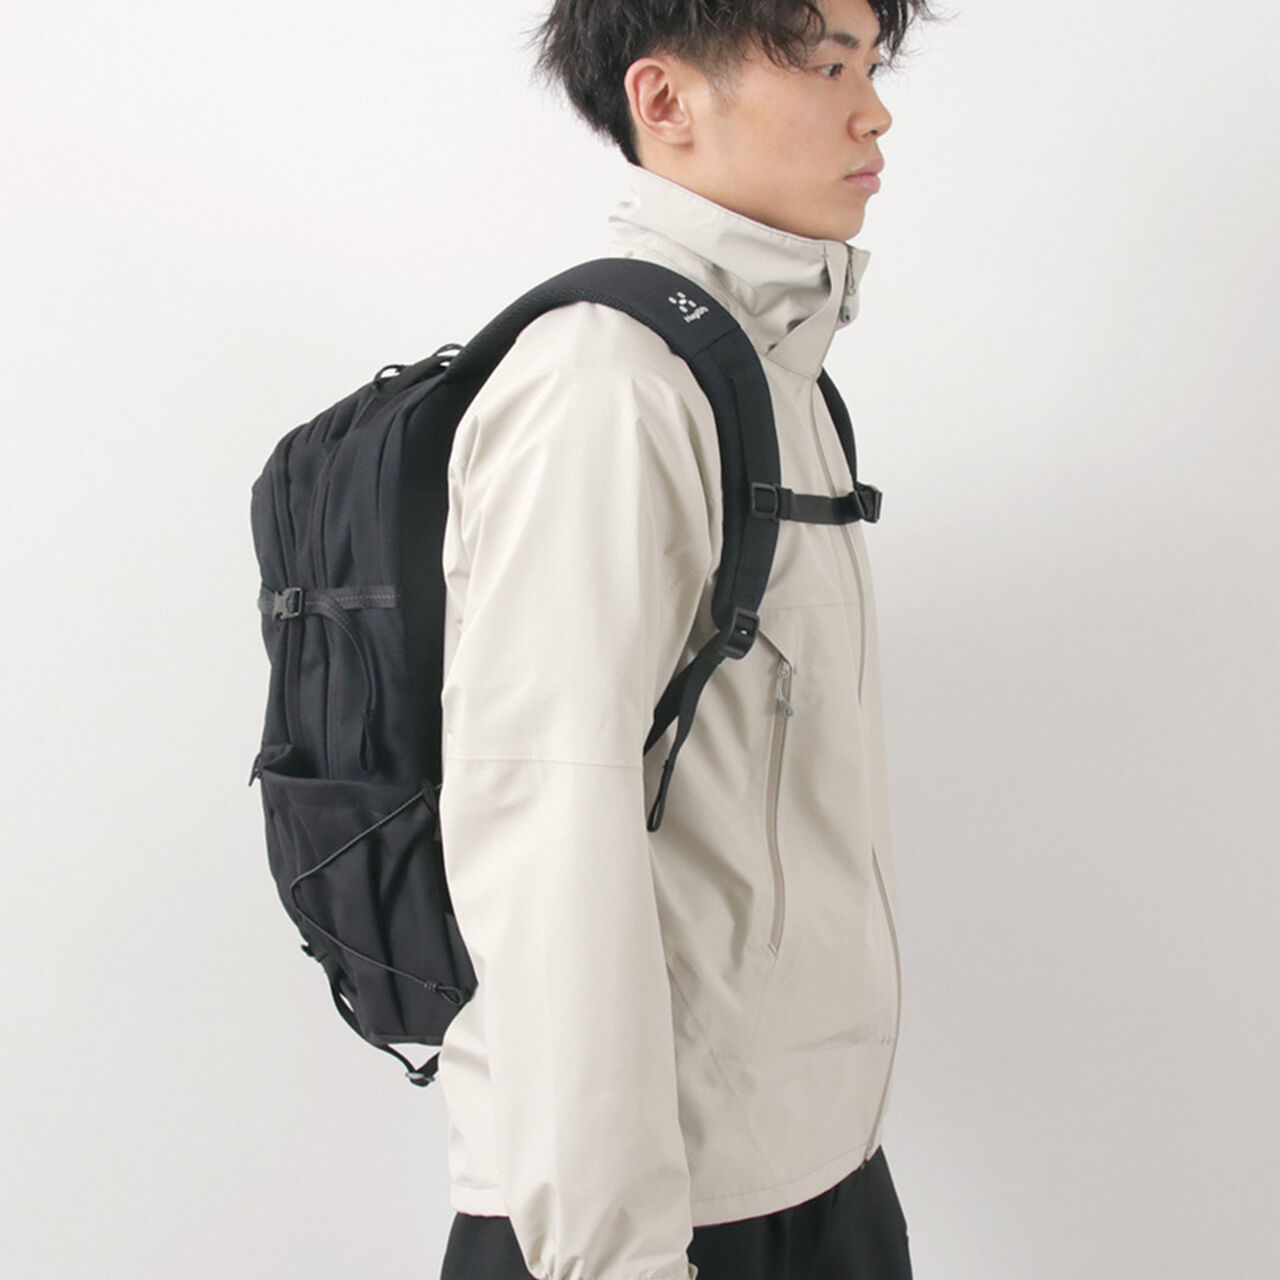 Jarve Multi 28 backpack,, large image number 4